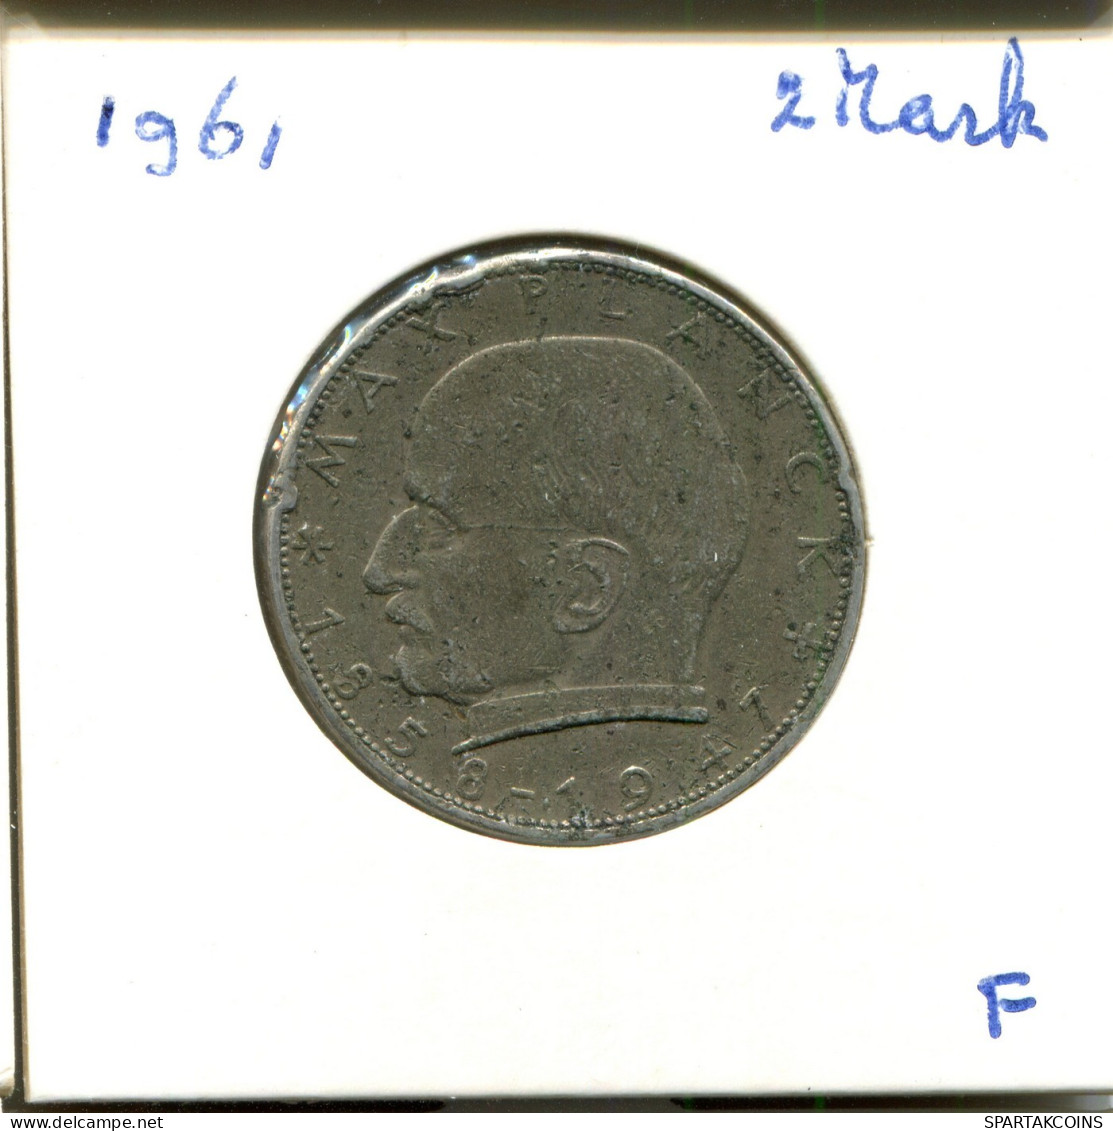 2 DM 1961 F M.Planck BRD ALEMANIA Moneda GERMANY #DA813.E.A - 2 Mark